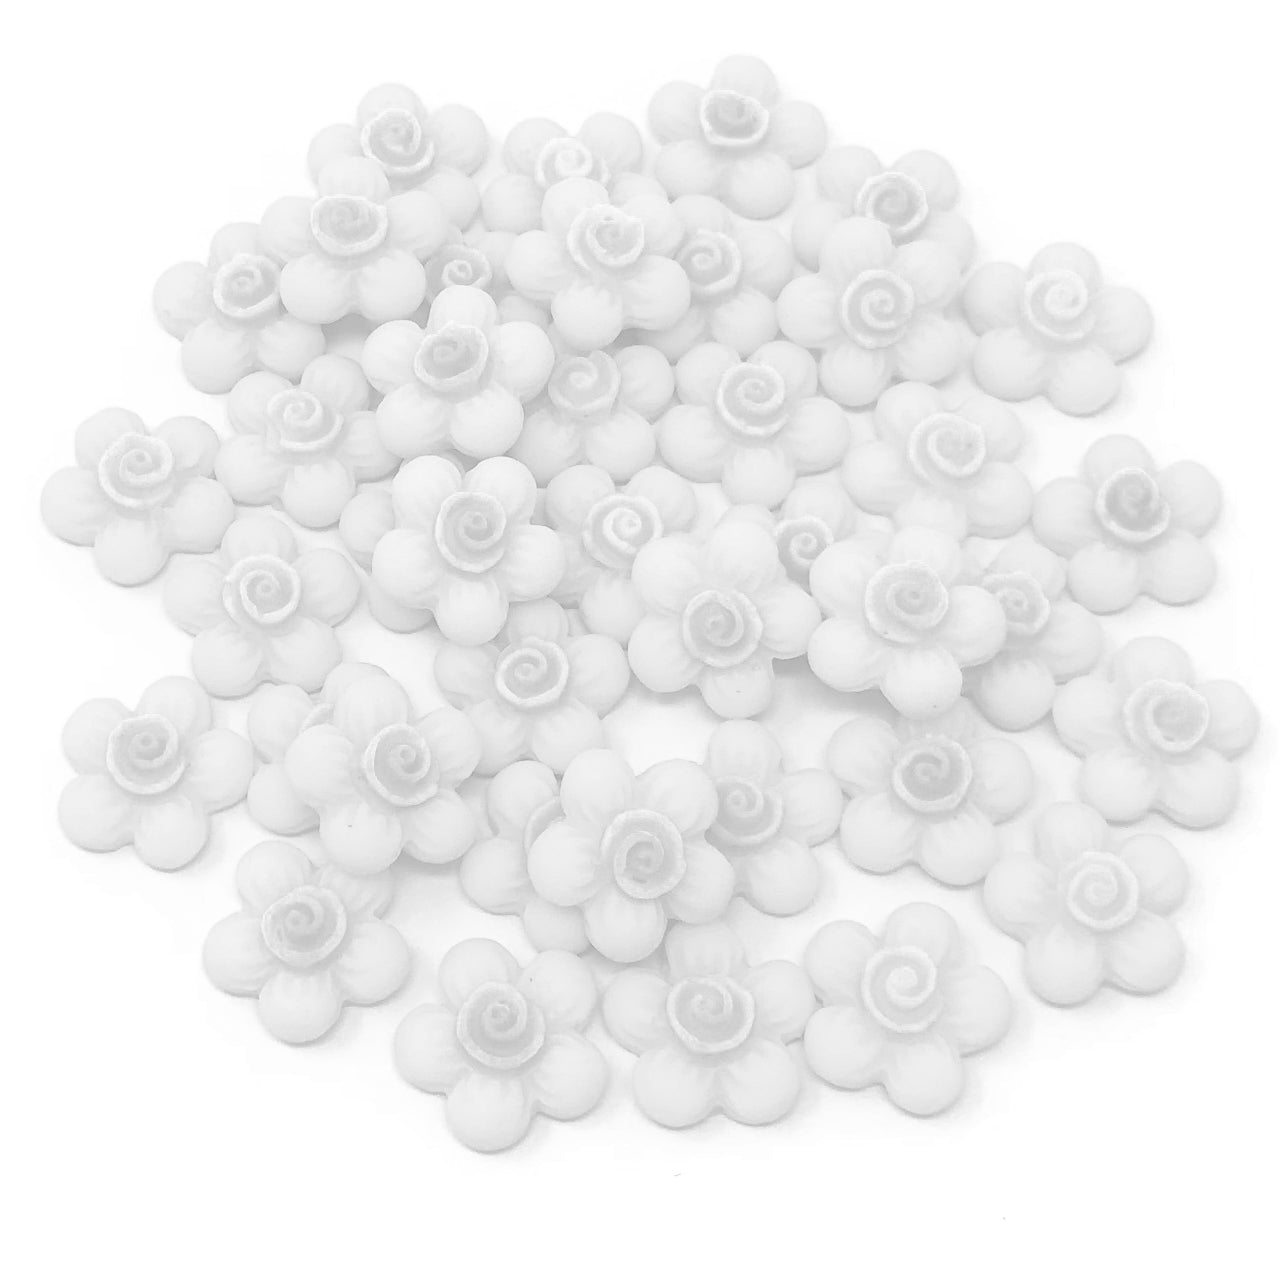 White 13mm Soft Feel Resin Flower Flatbacks - Pack of 40